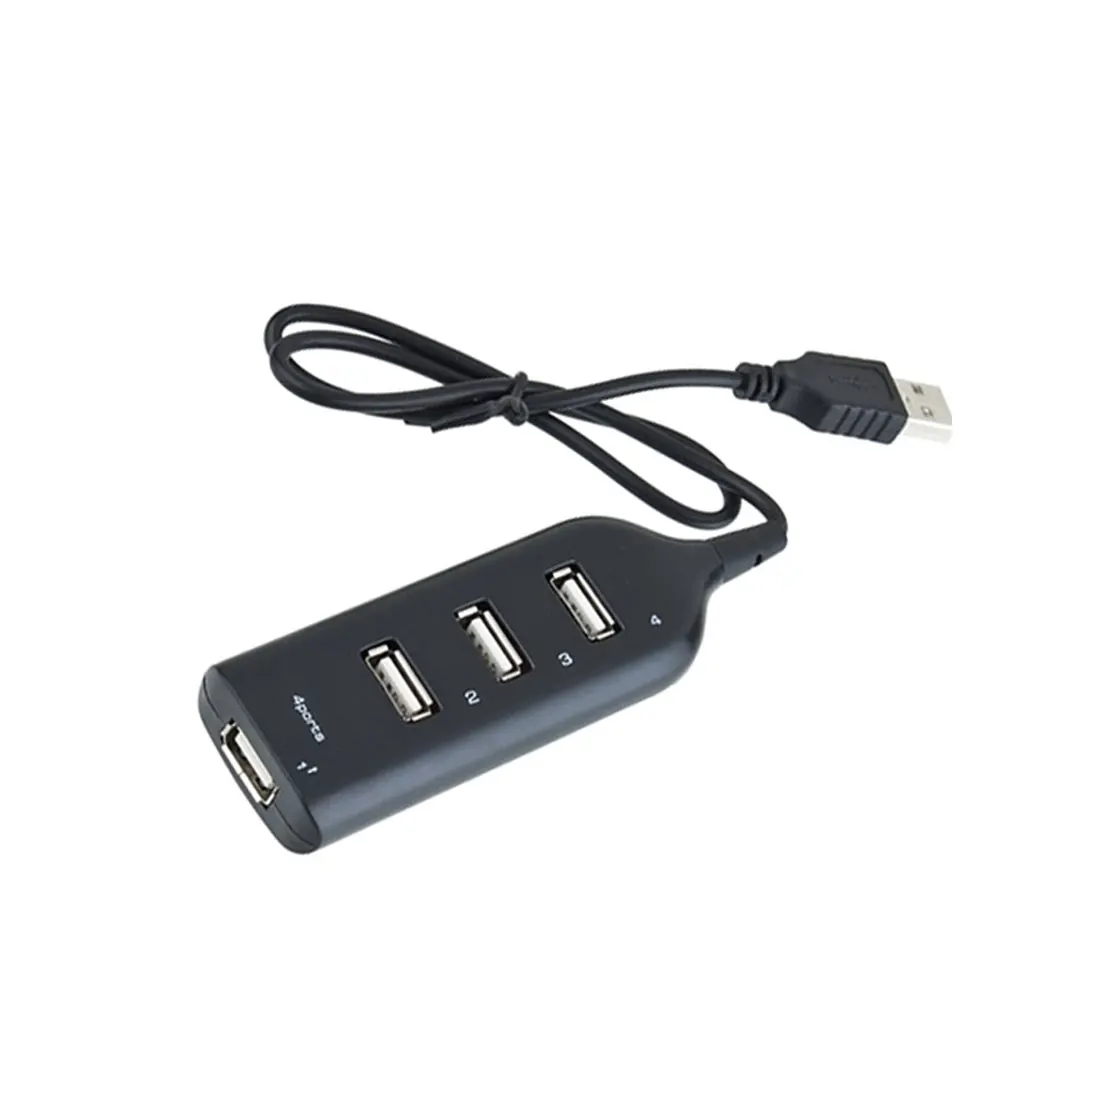 NOYOKERE Новое прибытие Мини 4 порта USB порт USB Hub Обмен Switch для портативных ПК Компьютерные Высокоскоростной оптовая продажа